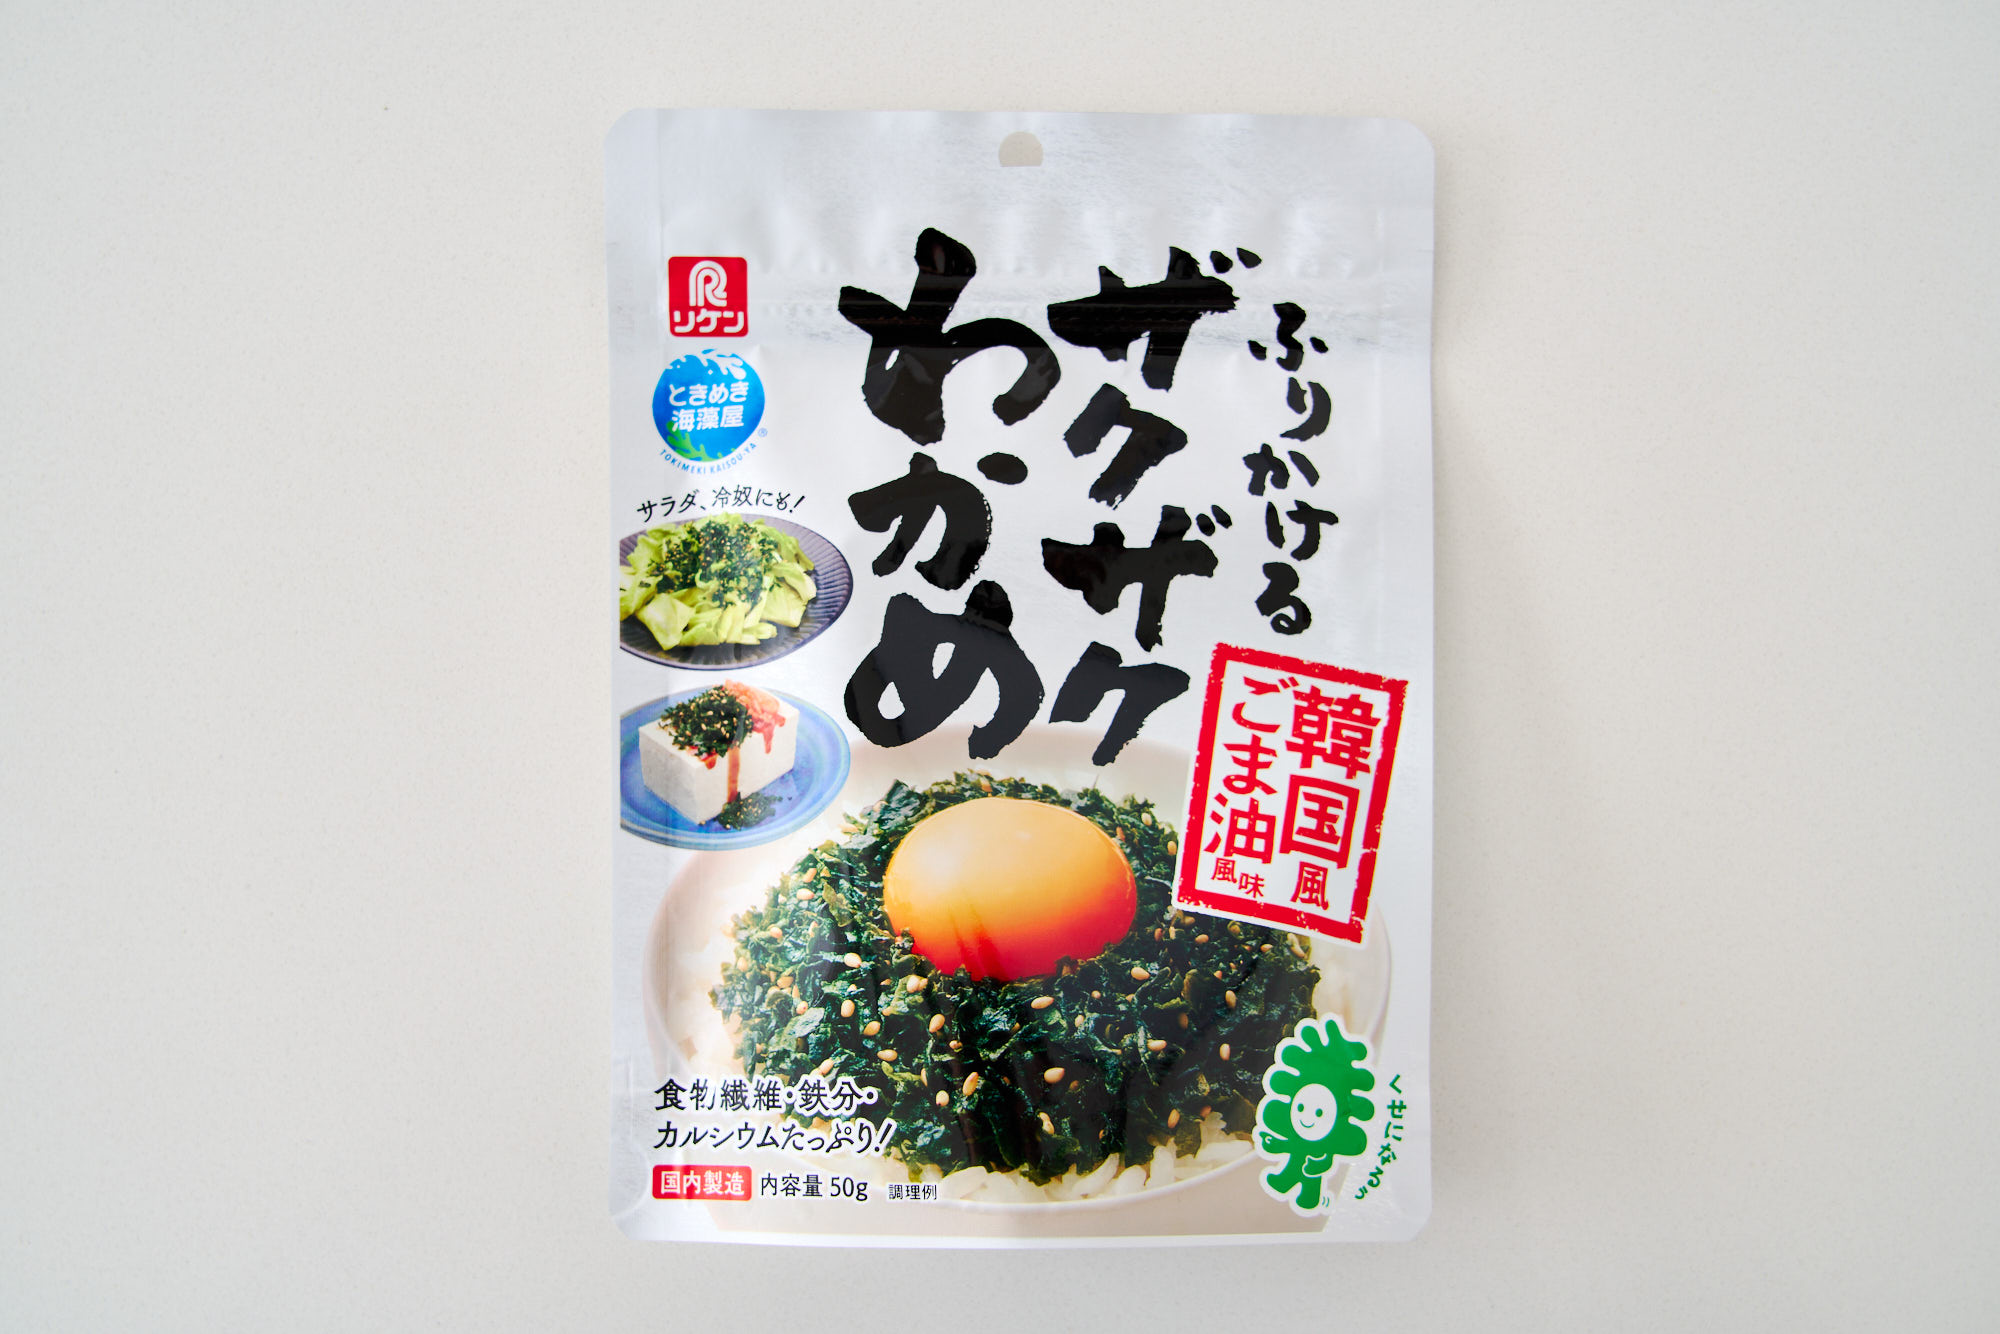 A package of Crispy Wakame Furikake